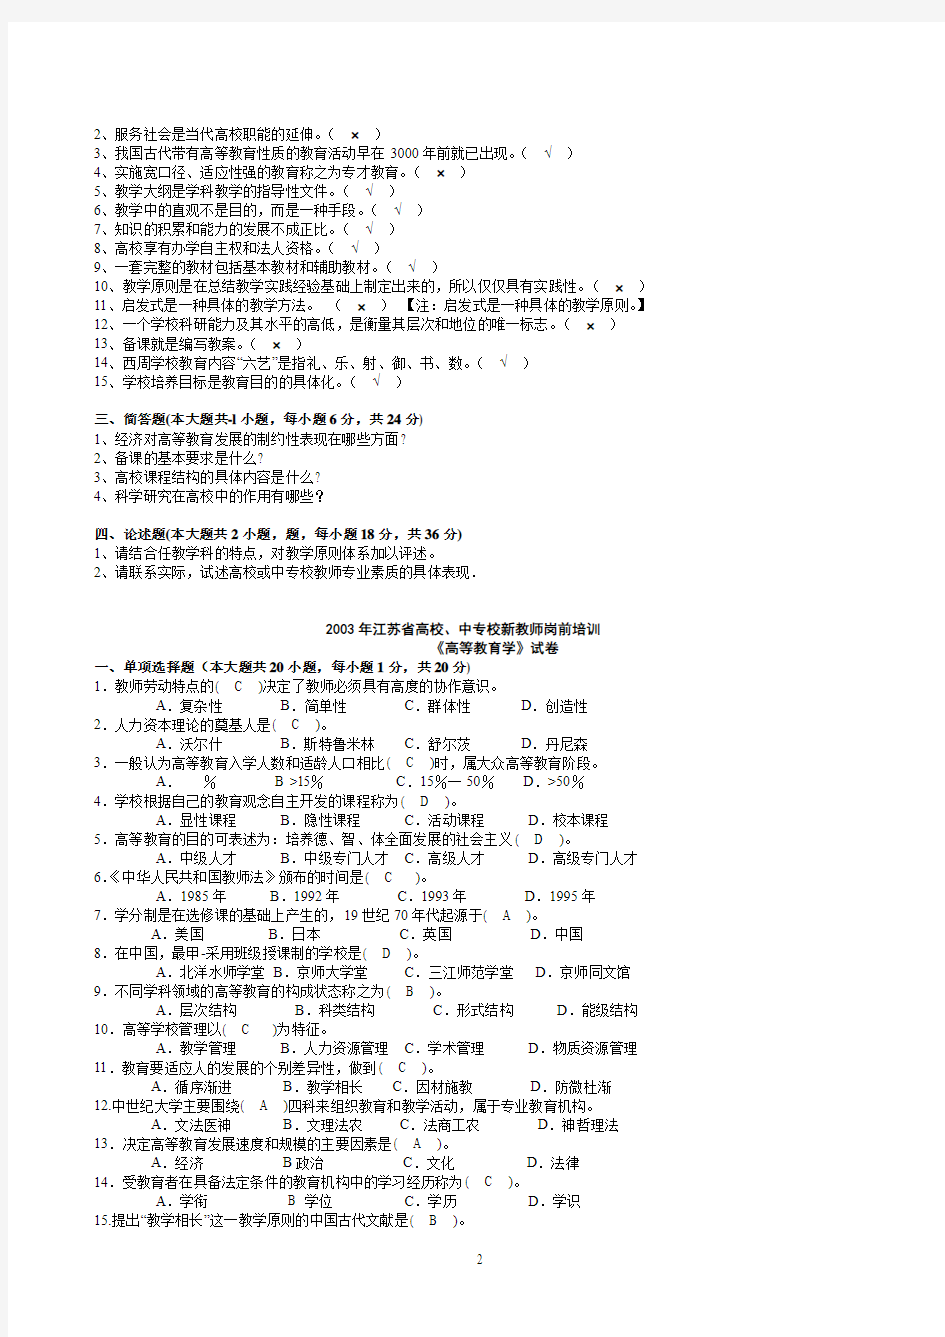 完整《高等教育学》2002-2012年江苏省高校新教师岗前培训试卷及参考答案